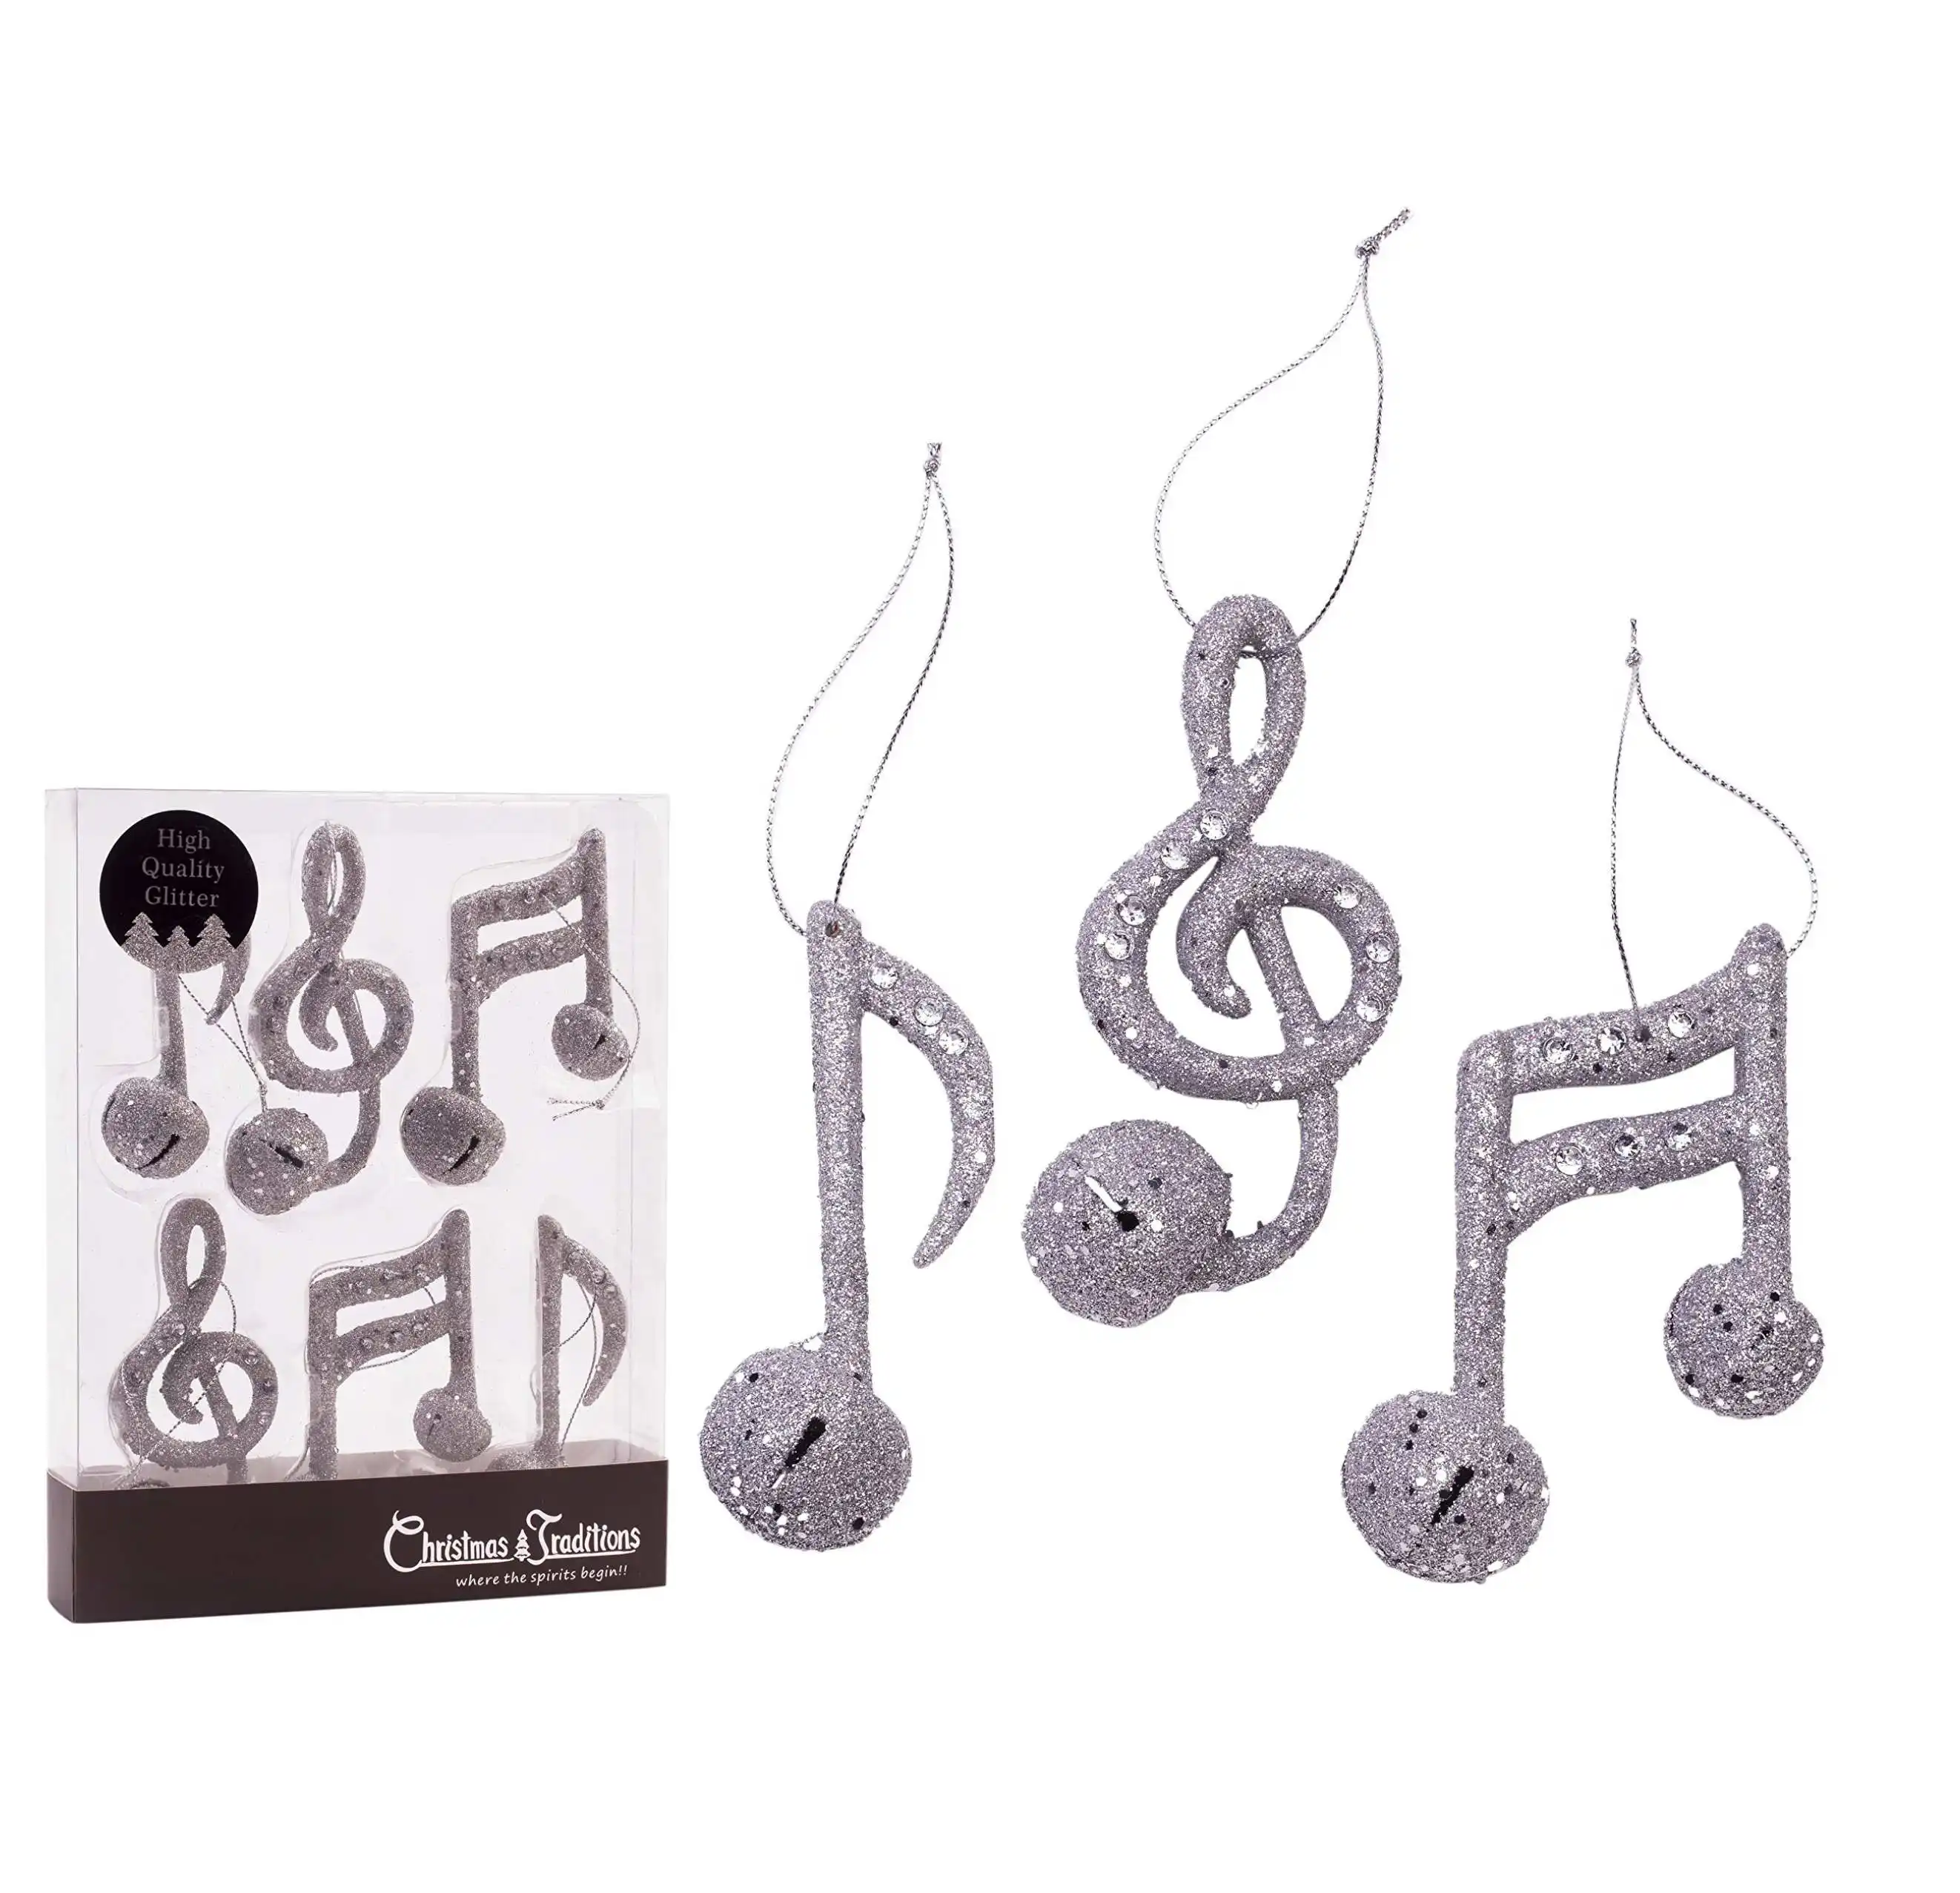 Su misura all'ingrosso 4 "argento glitterato natale appeso ornamenti musicali note musicali campana in metallo 3 stili asst. (Set di 6)